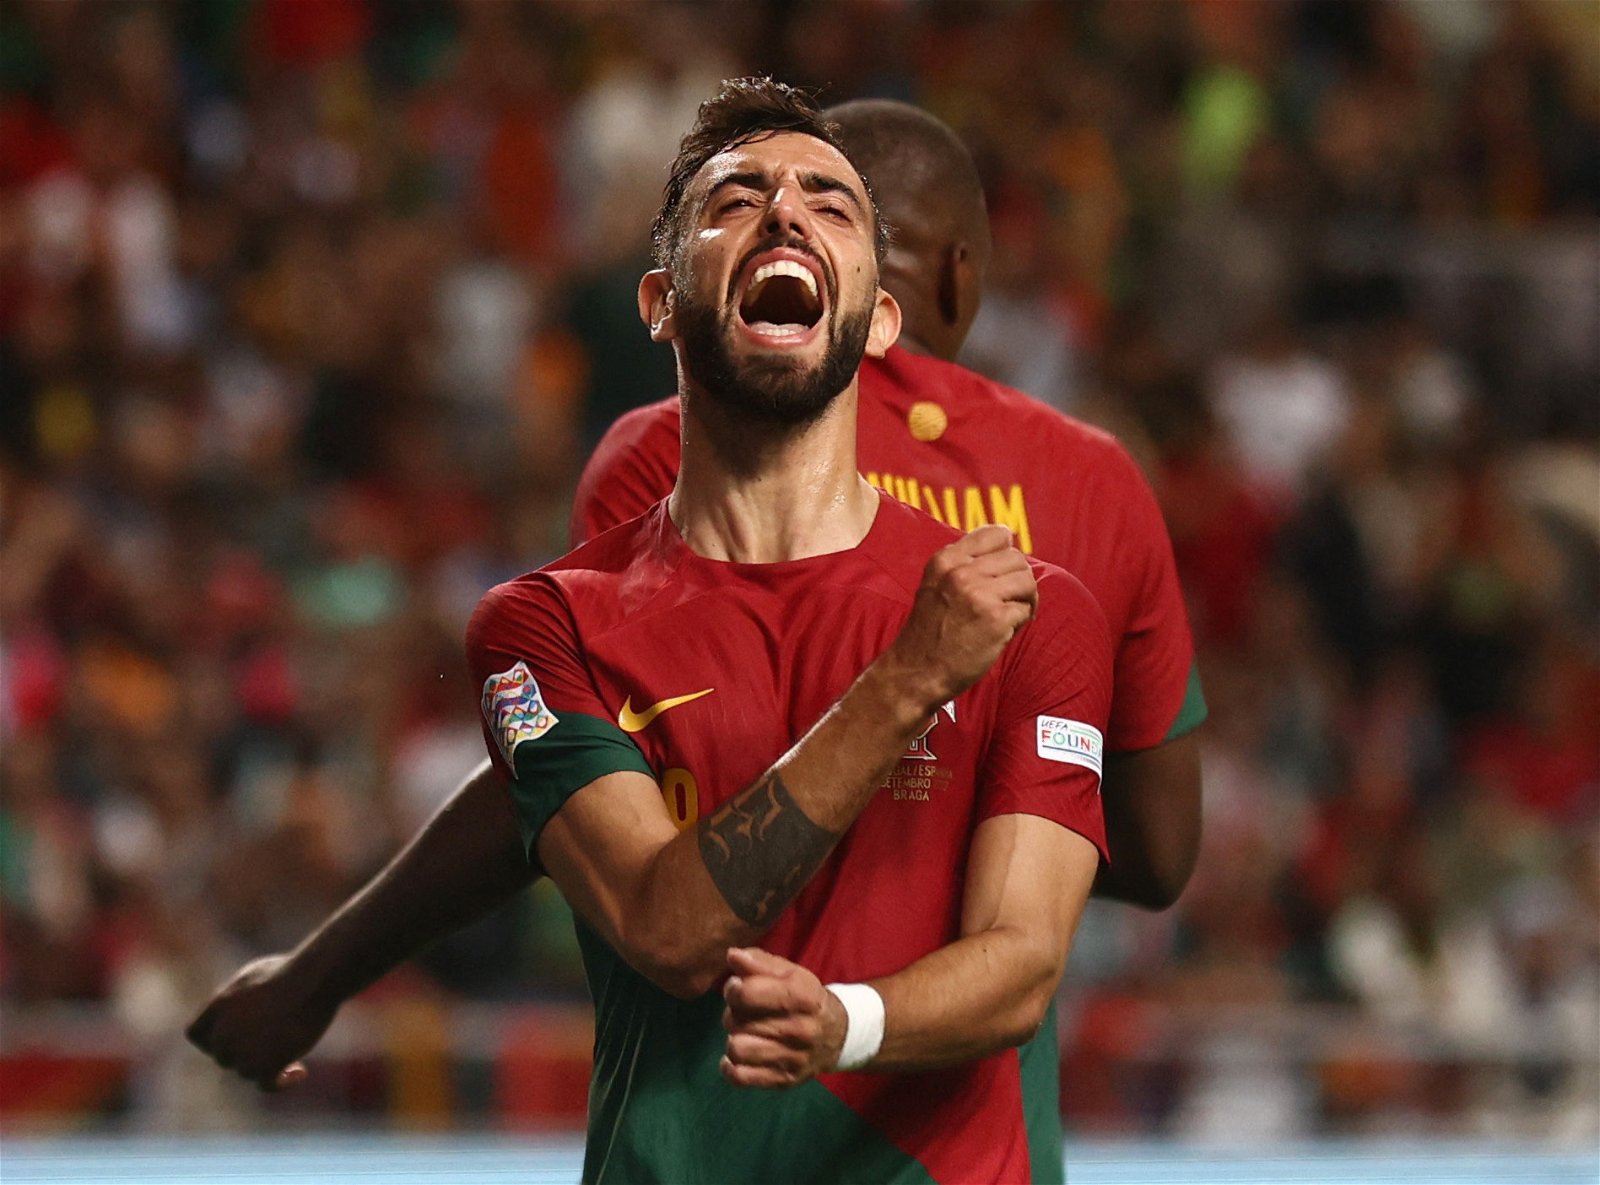 Portugal vs Ghana Live Stream